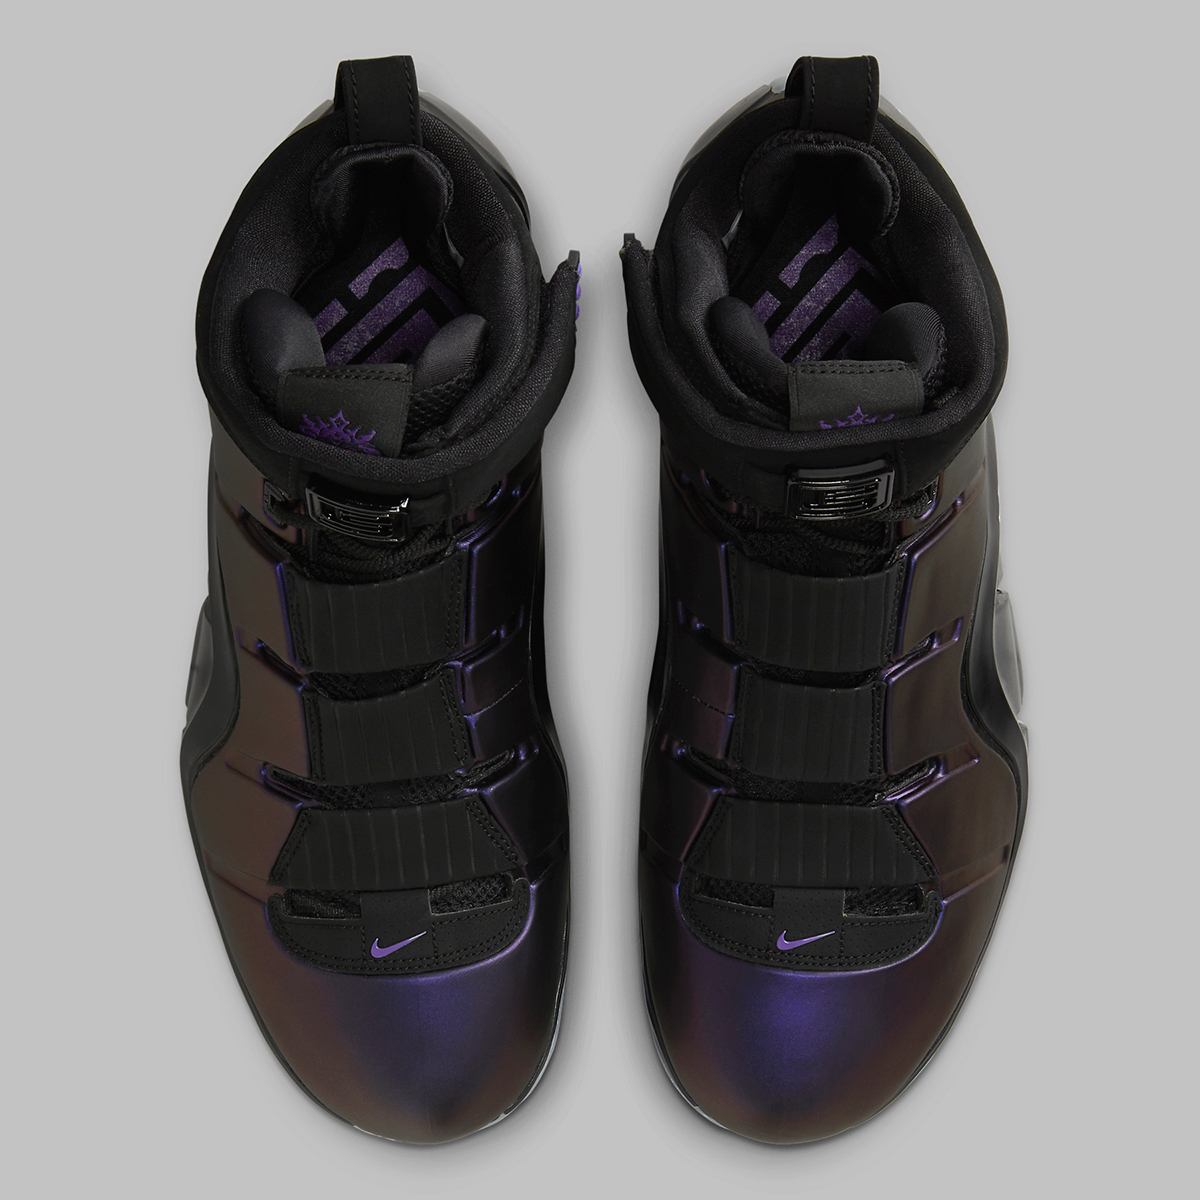 Nike Lebron Eggplant Fn6251 001 Release Date 10